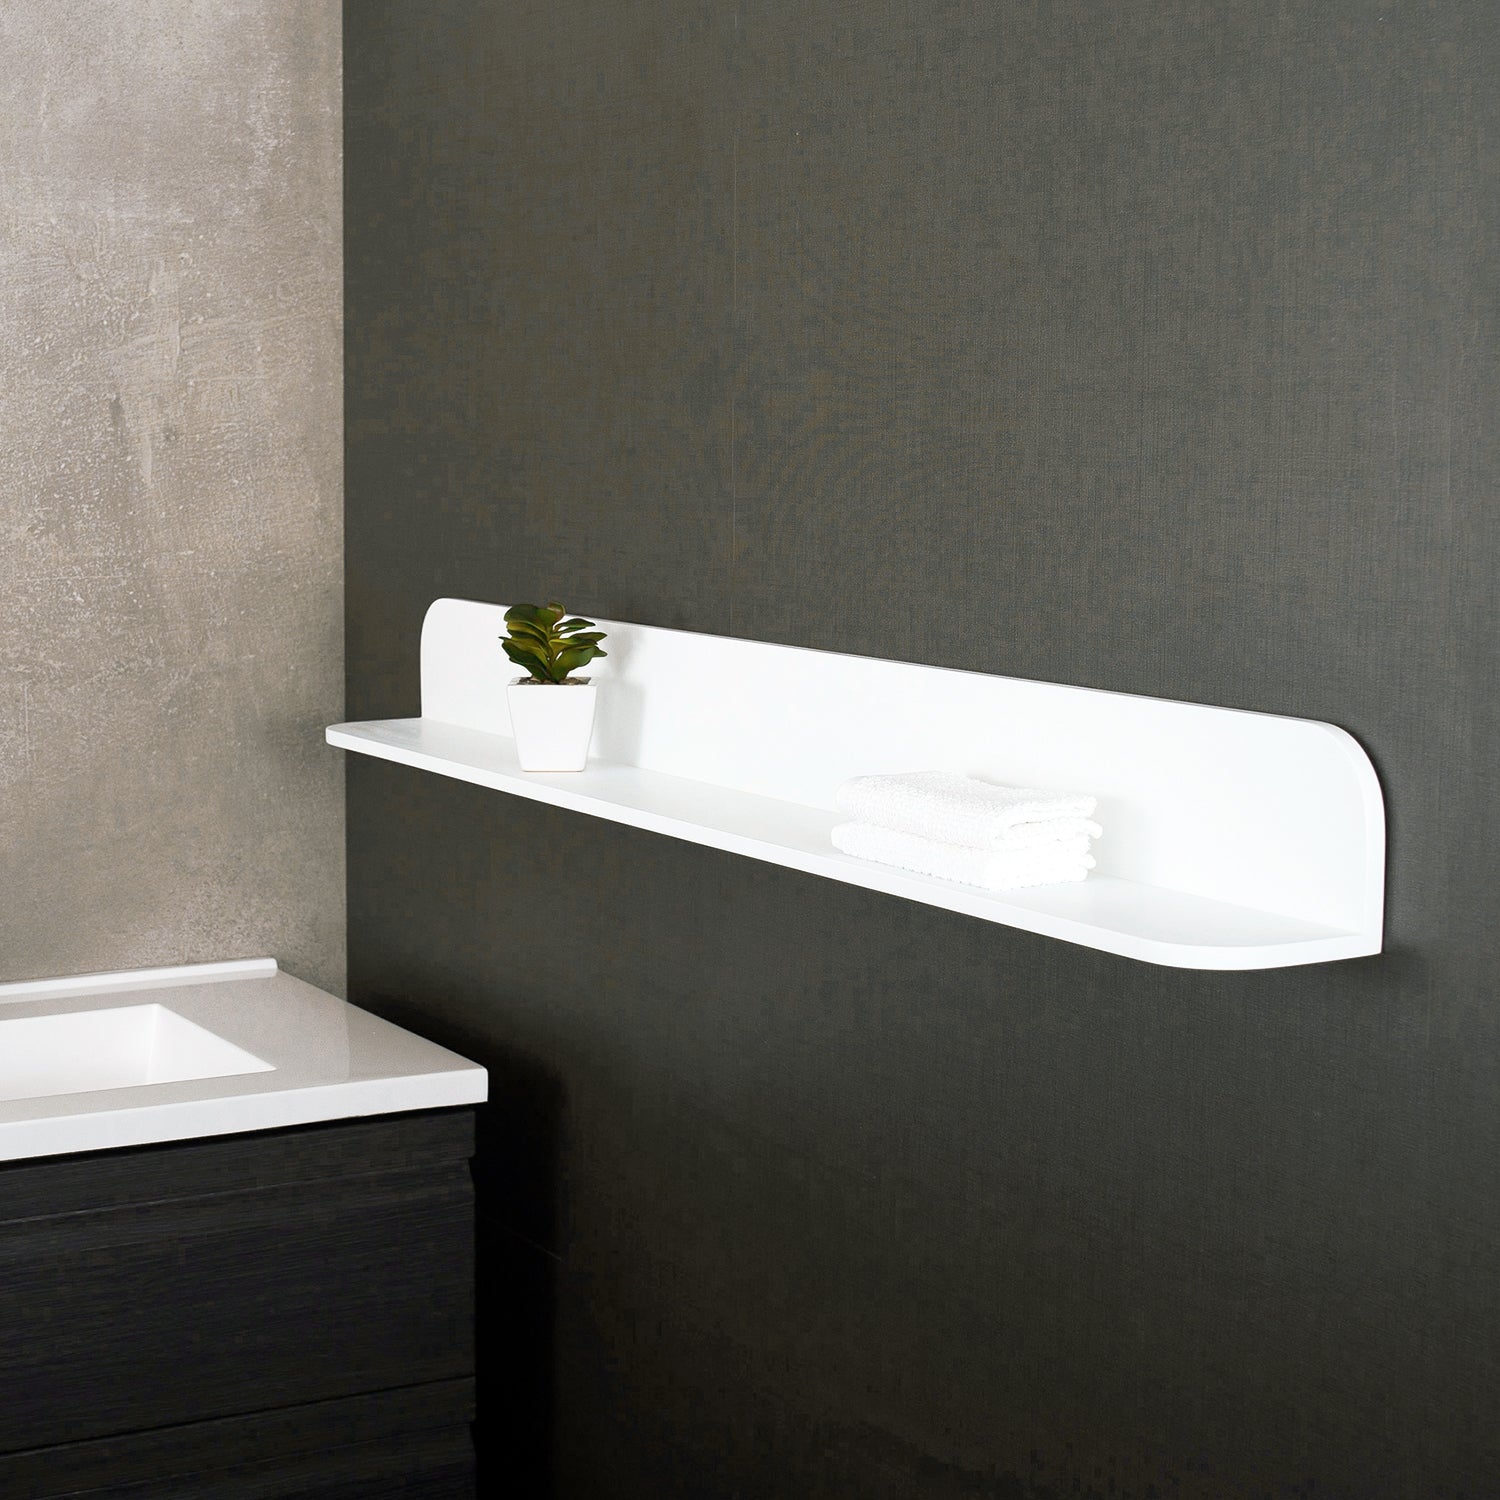 DAX Estante de baño de superficie sólida, montaje en pared, acabado blanco mate, 47-1/4 x 4-3/4 x 4-3/4 pulgadas (DAX-AB-1560-47)